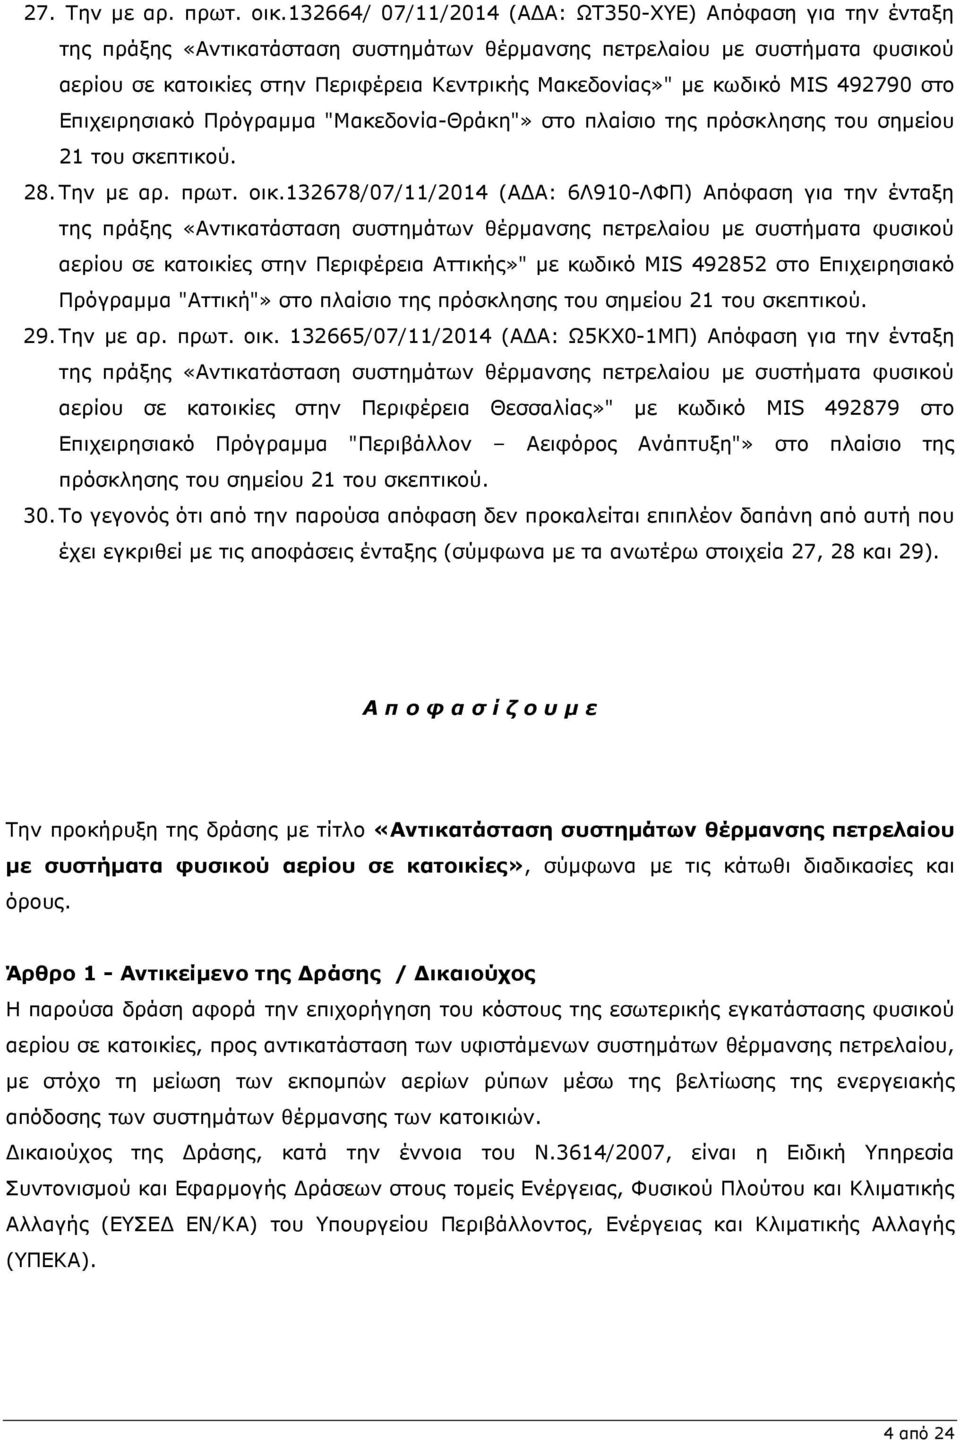 κωδικό MIS 492790 στο Επιχειρησιακό Πρόγραµµα "Μακεδονία-Θράκη"» στο πλαίσιο της πρόσκλησης του σηµείου 21 του σκεπτικού. 28. Την µε αρ. πρωτ. οικ.